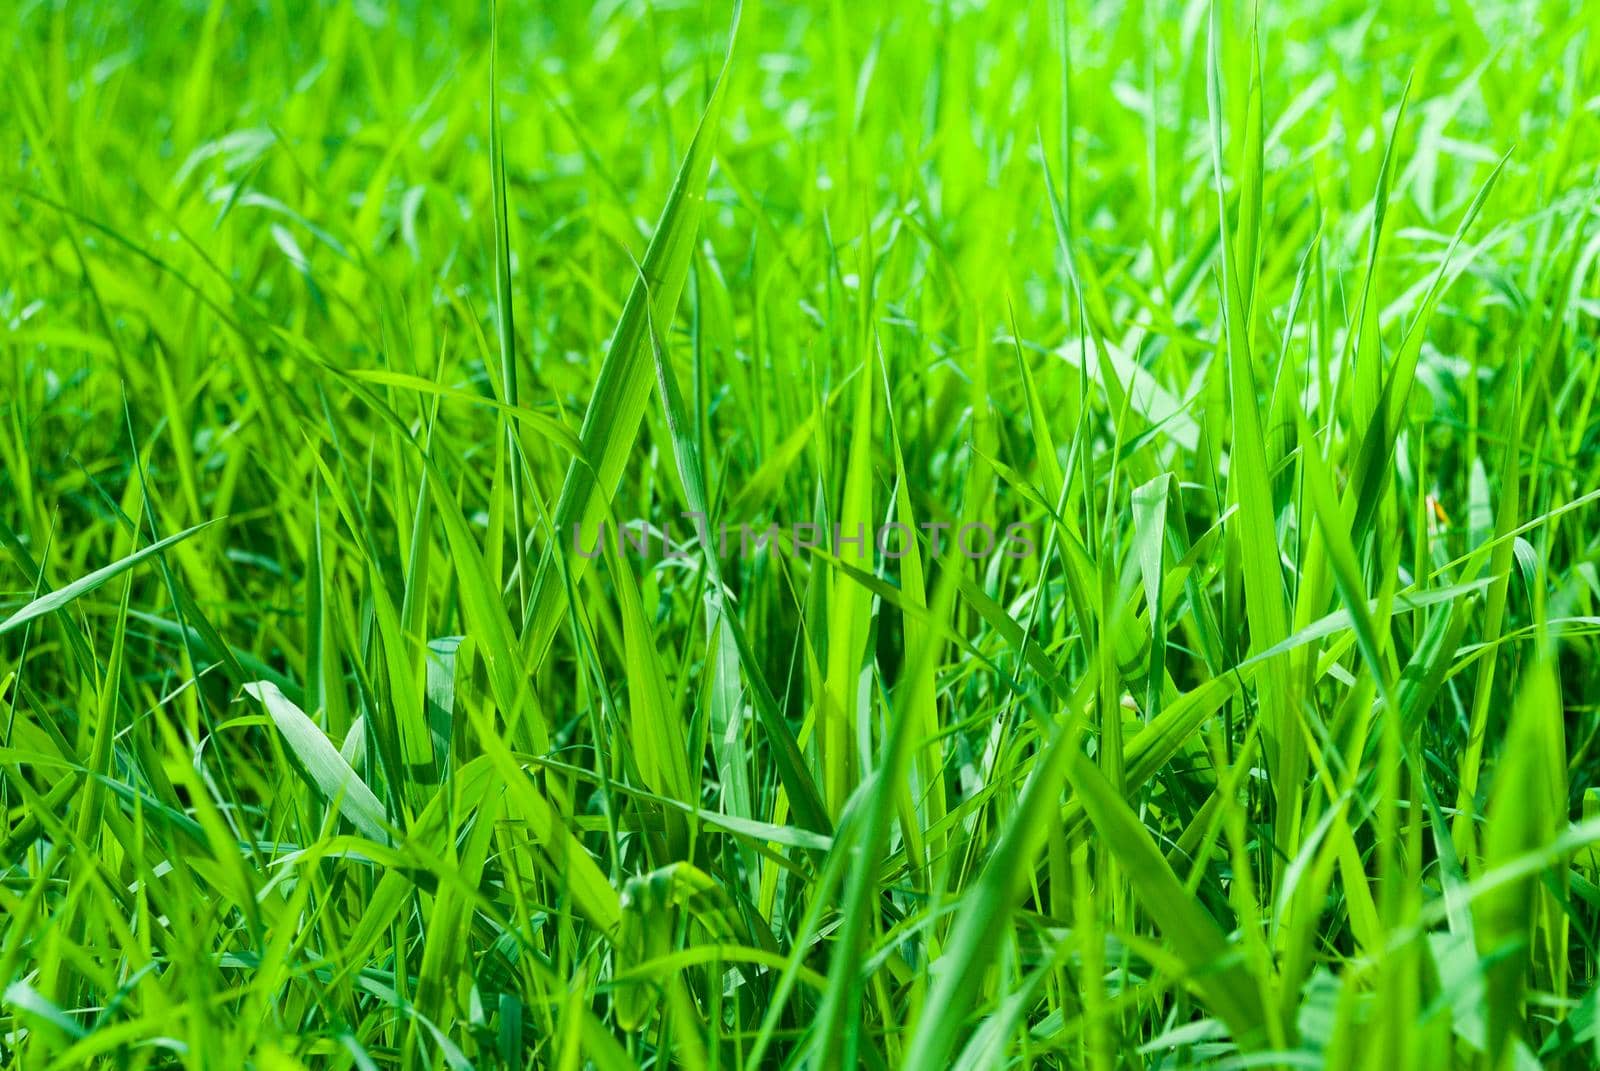 Green fresh Meadow Background by bildgigant